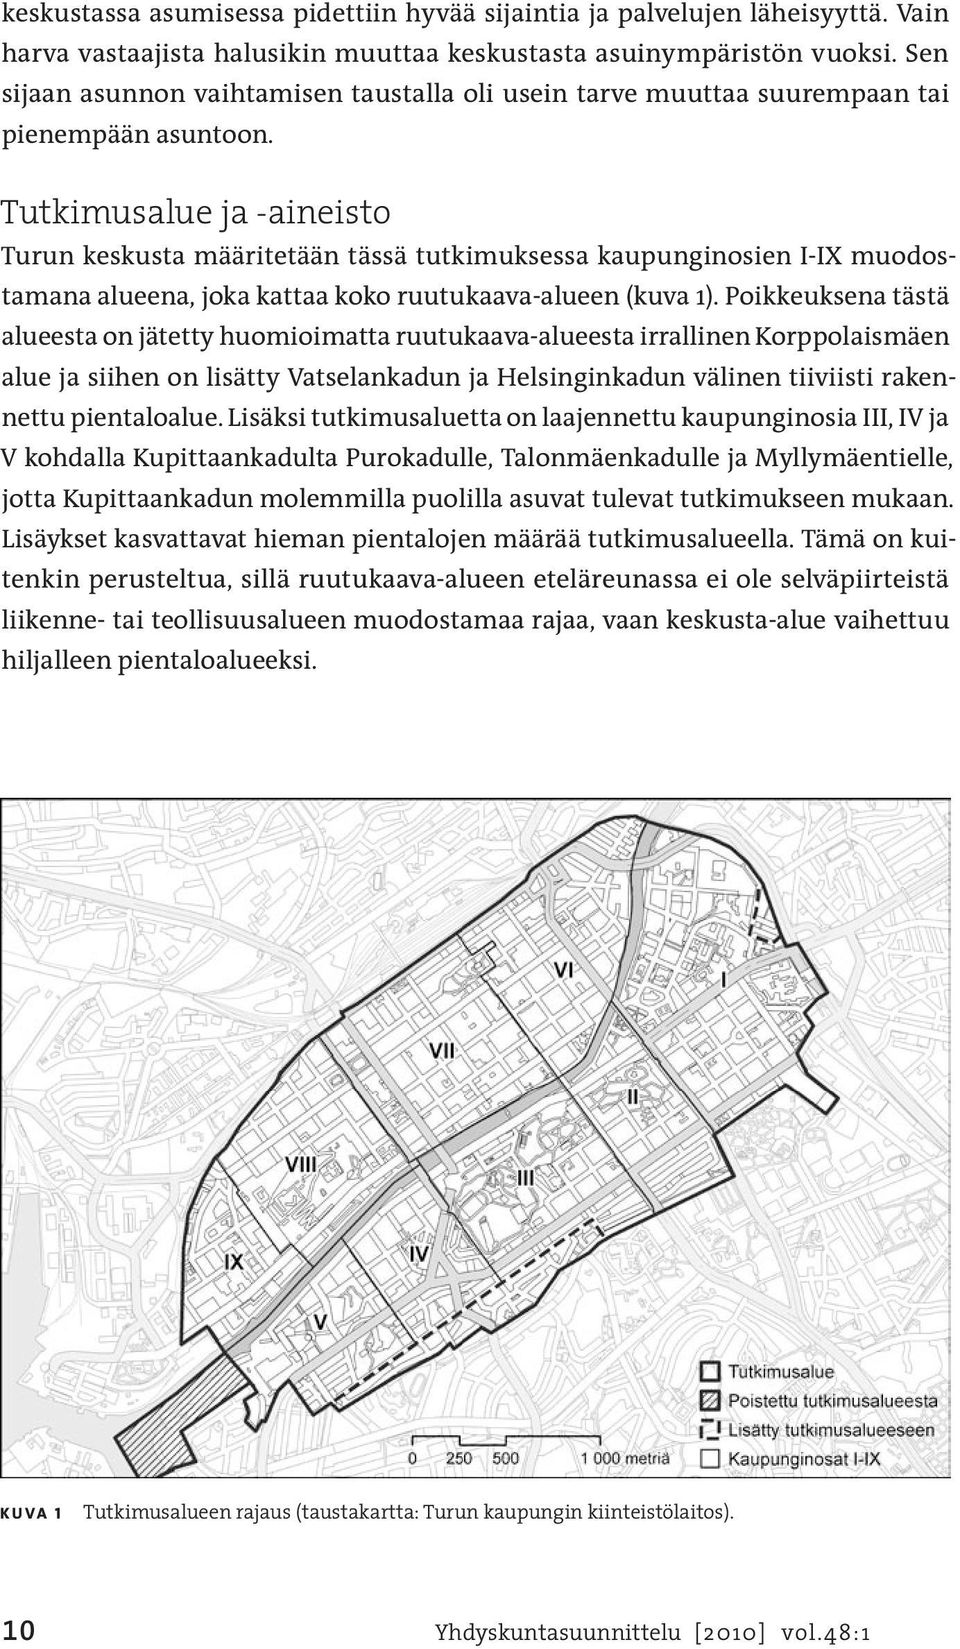 Tutkimusalue ja -aineisto Turun keskusta määritetään tässä tutkimuksessa kaupunginosien I-IX muodostamana alueena, joka kattaa koko ruutukaava-alueen (kuva 1).